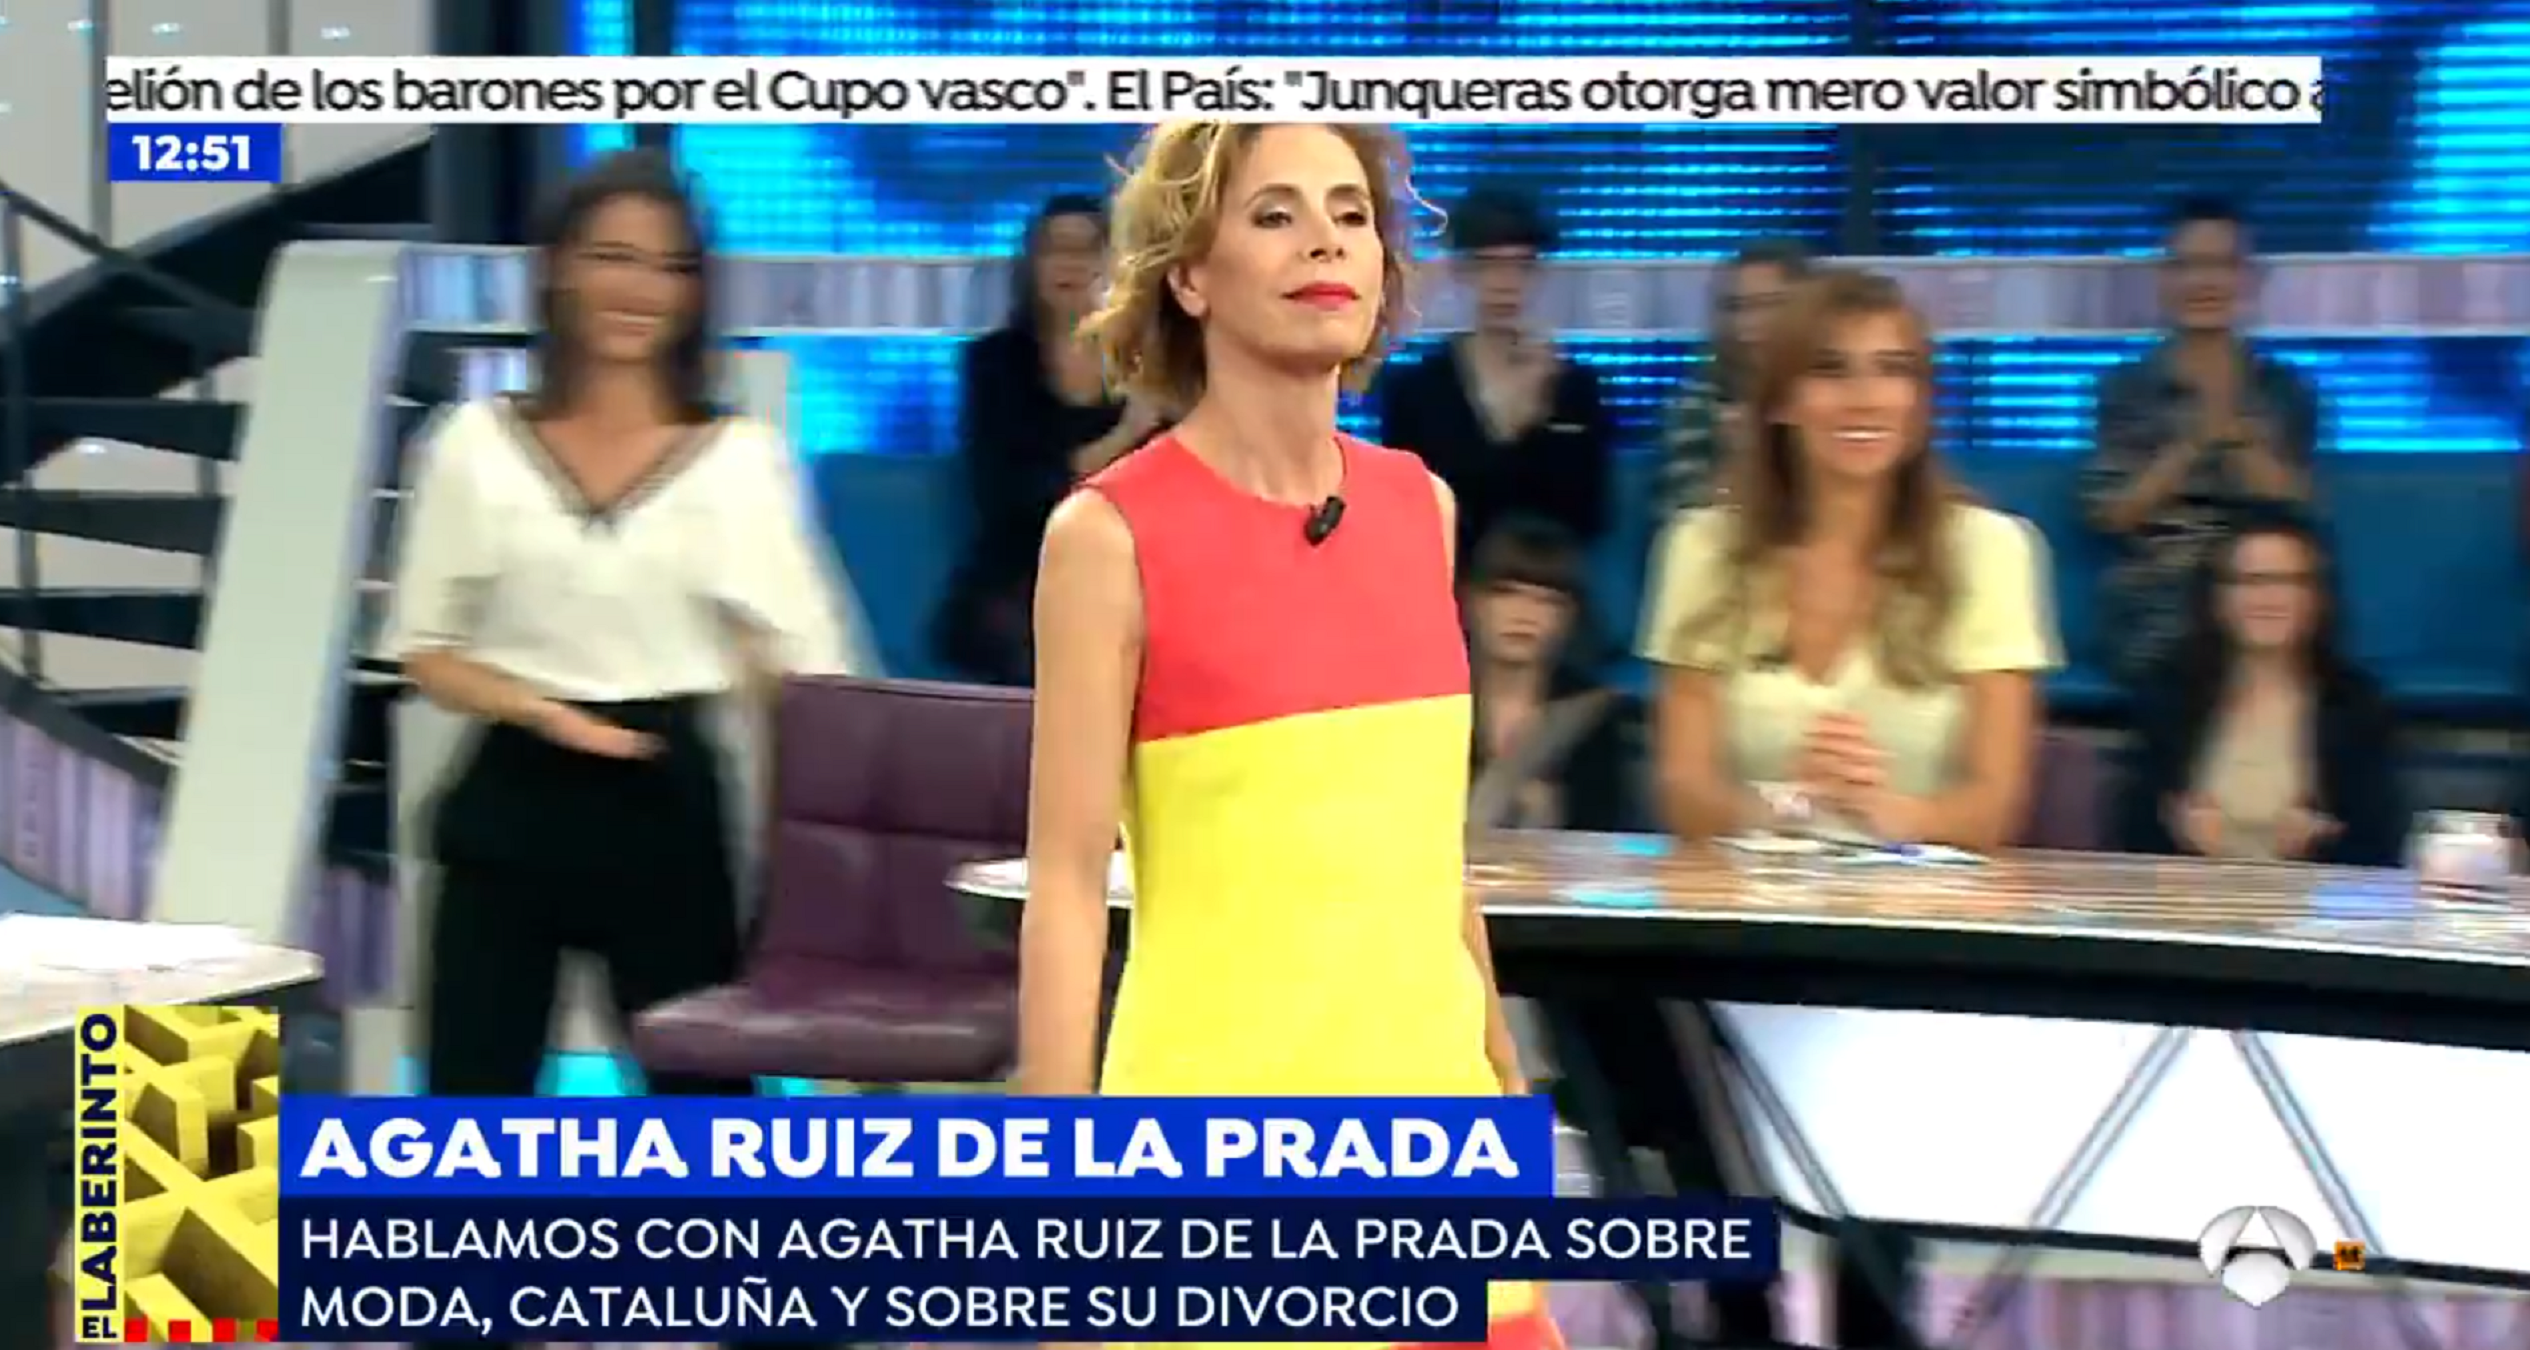 Agatha Ruiz de la Prada menysprea Catalunya i ridiculitza Puigdemont